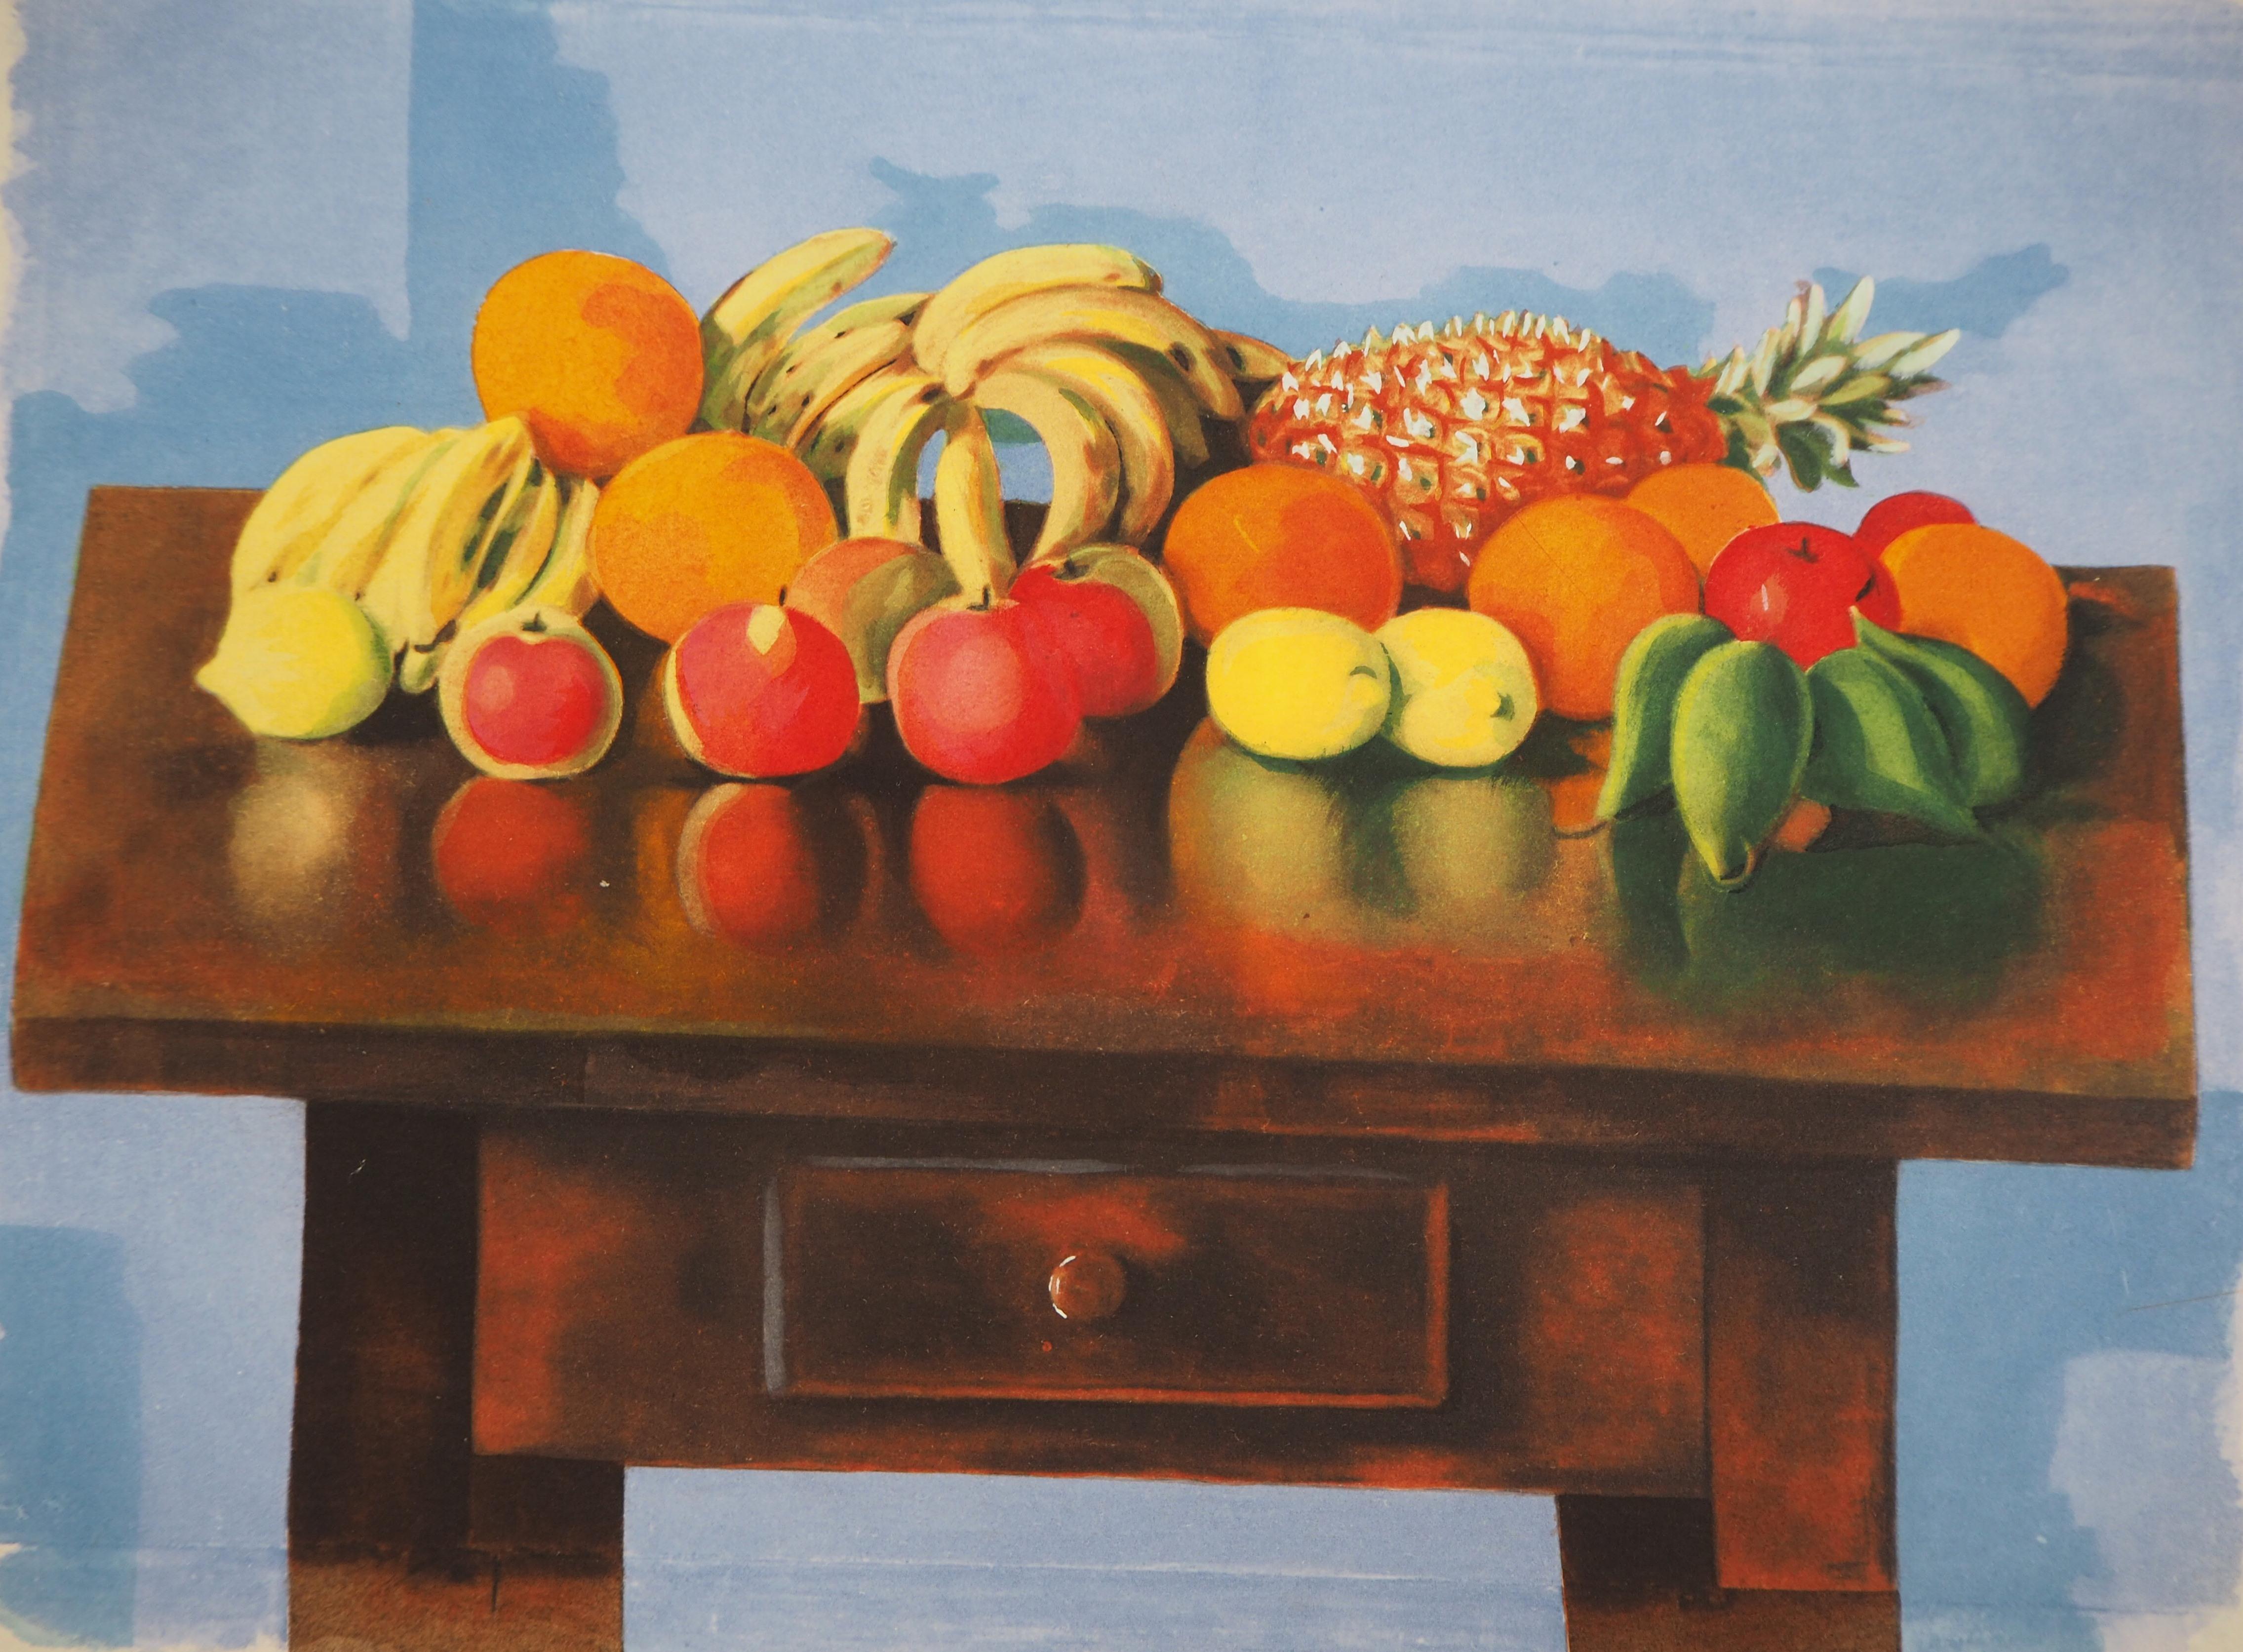 Tisch mit Sommerfrüchten – Original Lithographie – Print von Moise Kisling